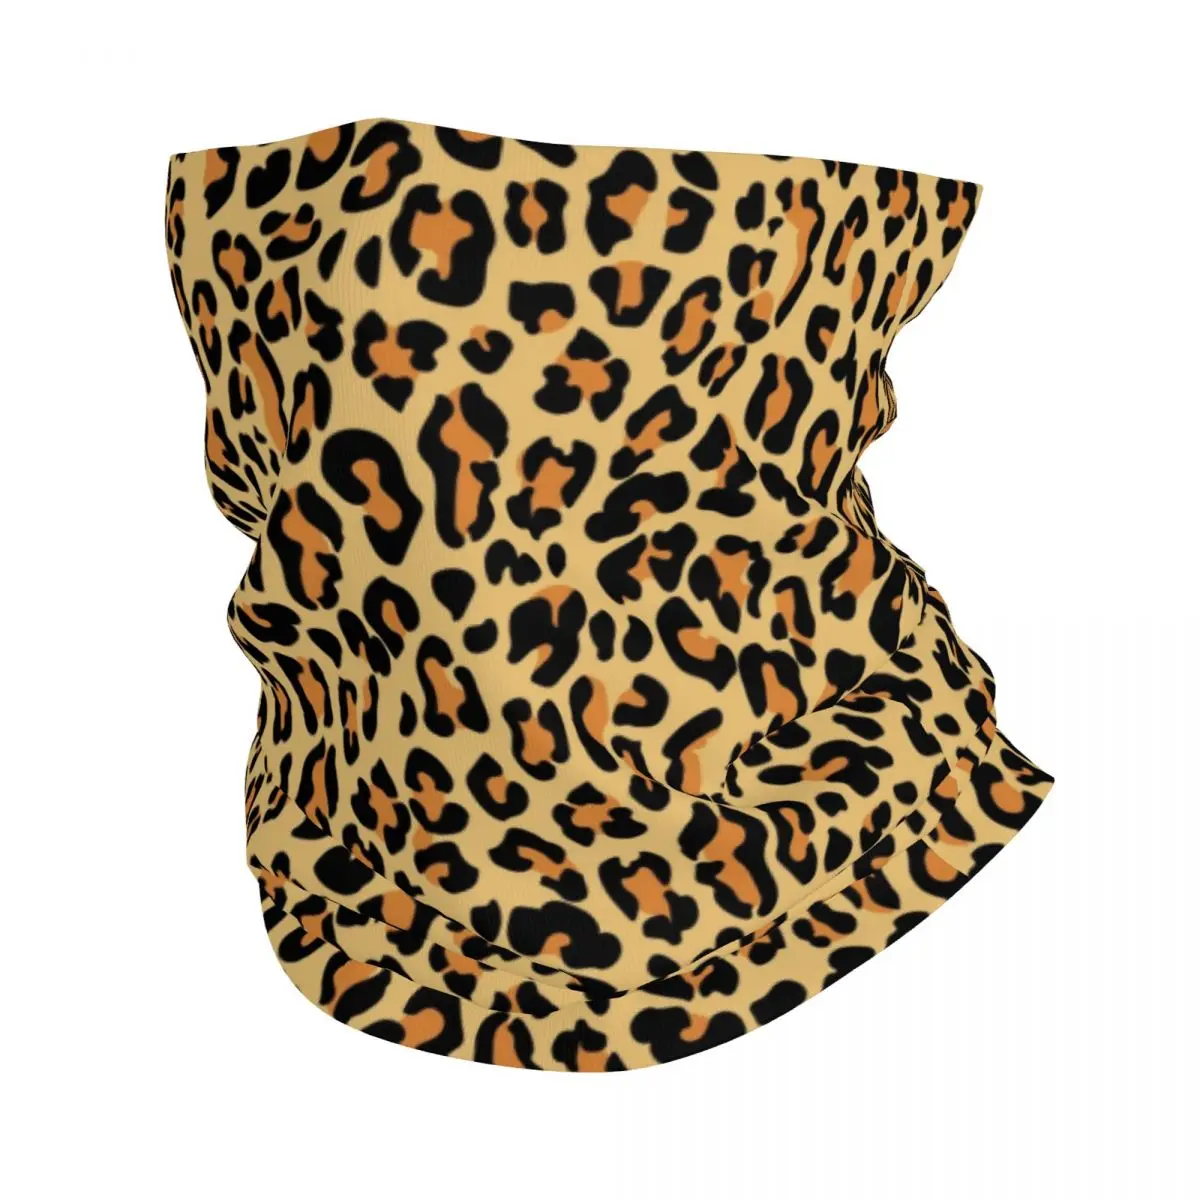 

Бандана с леопардовым принтом, шейный Гетр, ветрозащитный шарф для лица, Обложка для женщин и мужчин, обруч с животным, Балаклава-труба